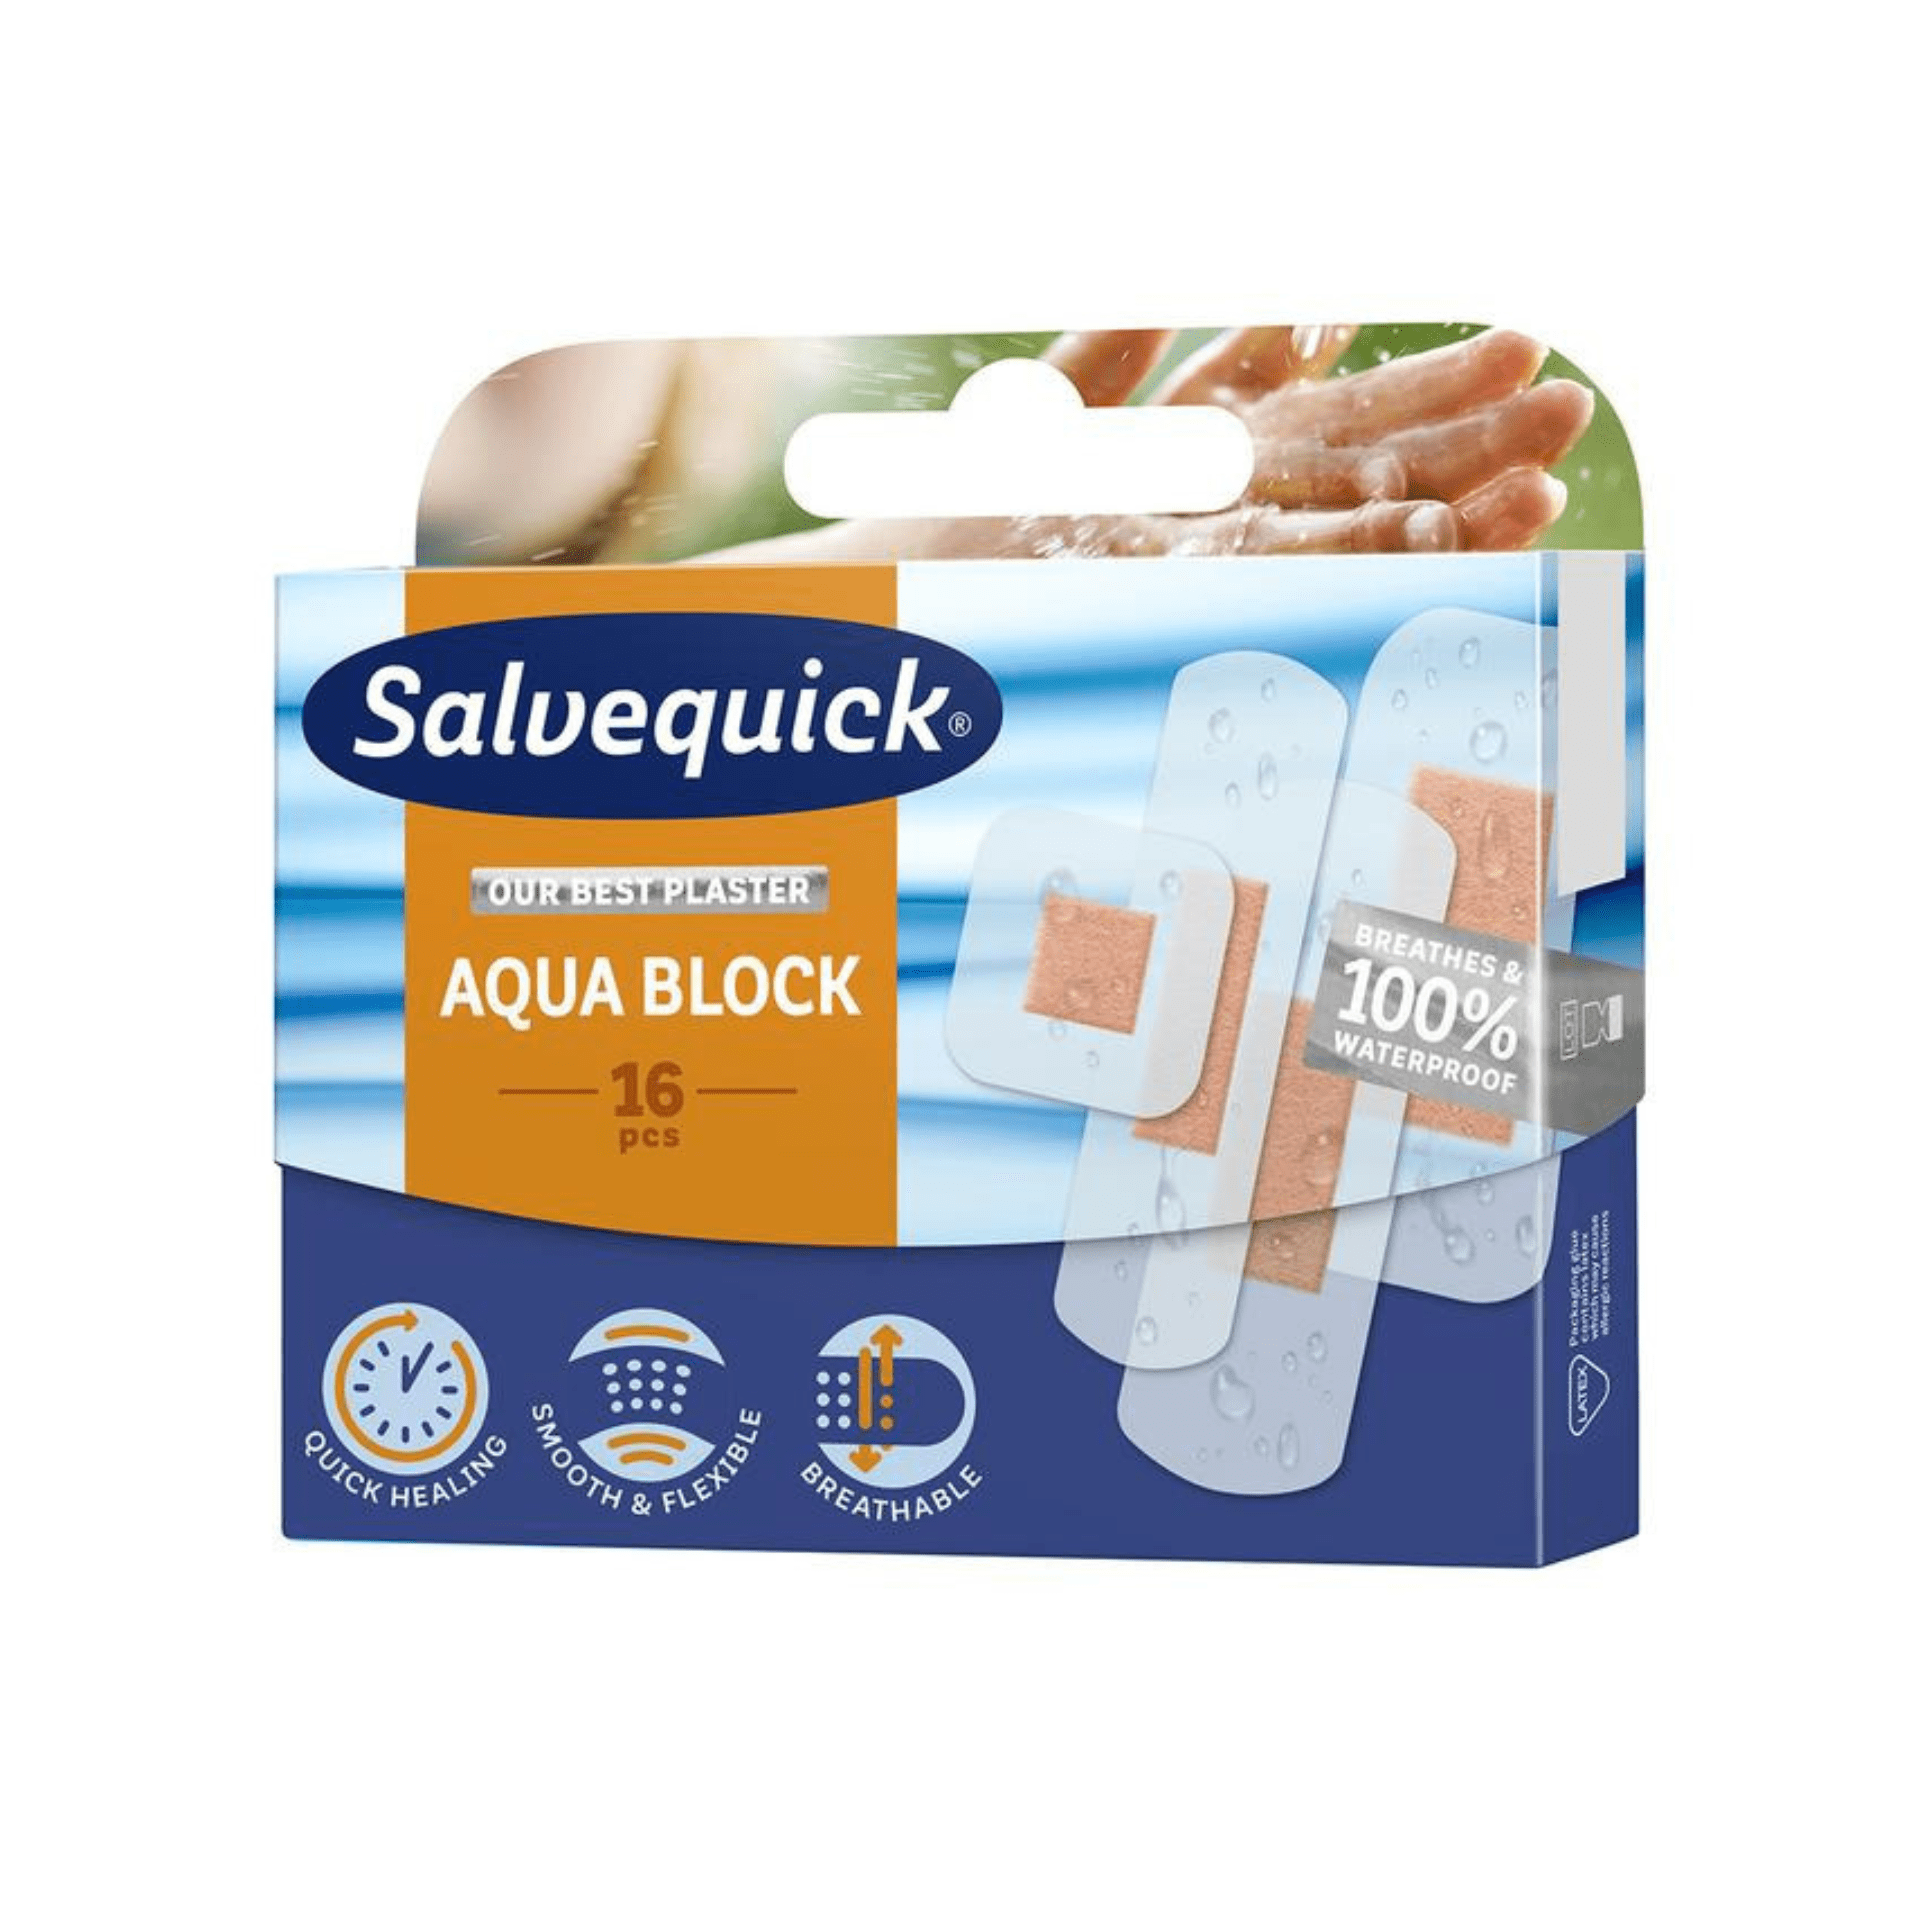 Salvequick Aqua Block 16 Exp